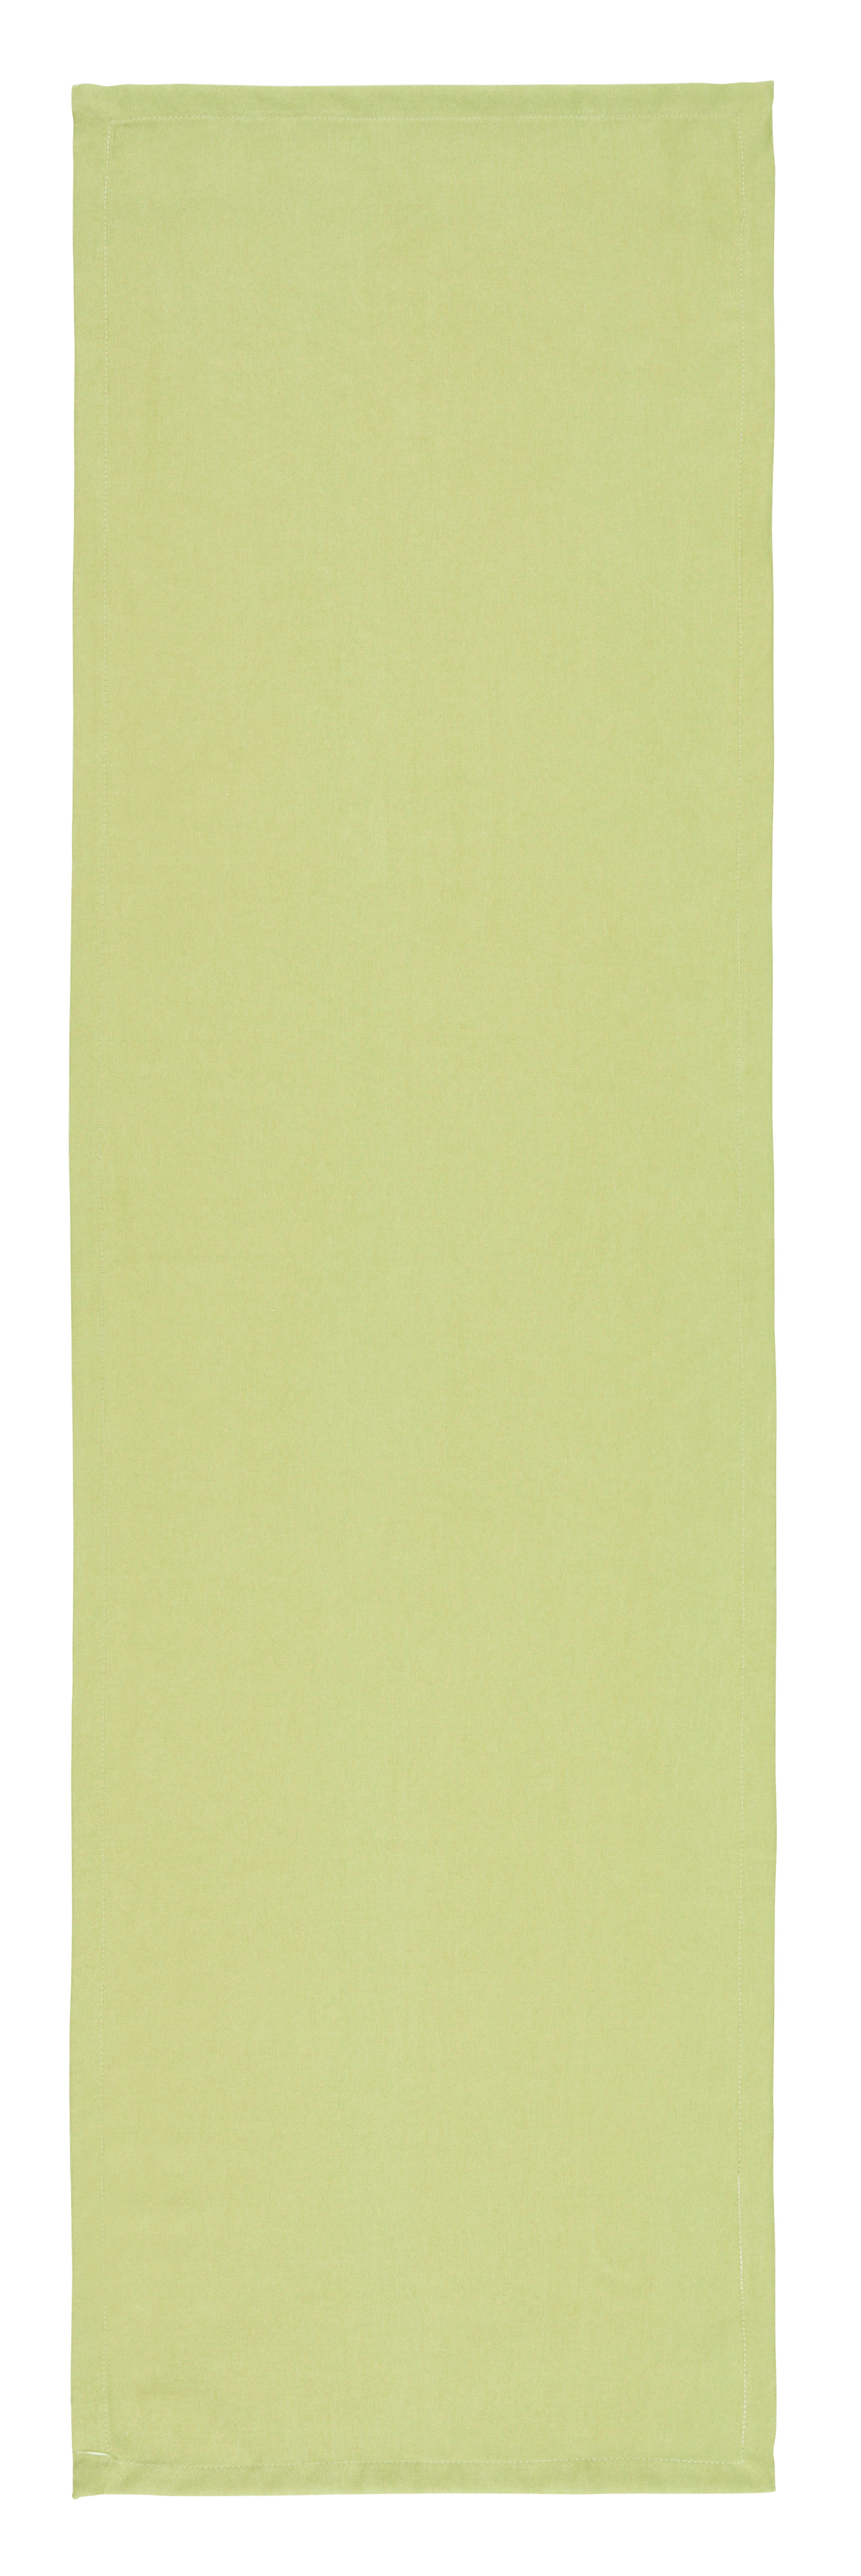 TISCHLÄUFER 40/140 cm   - Grün, KONVENTIONELL, Textil (40/140cm) - Novel